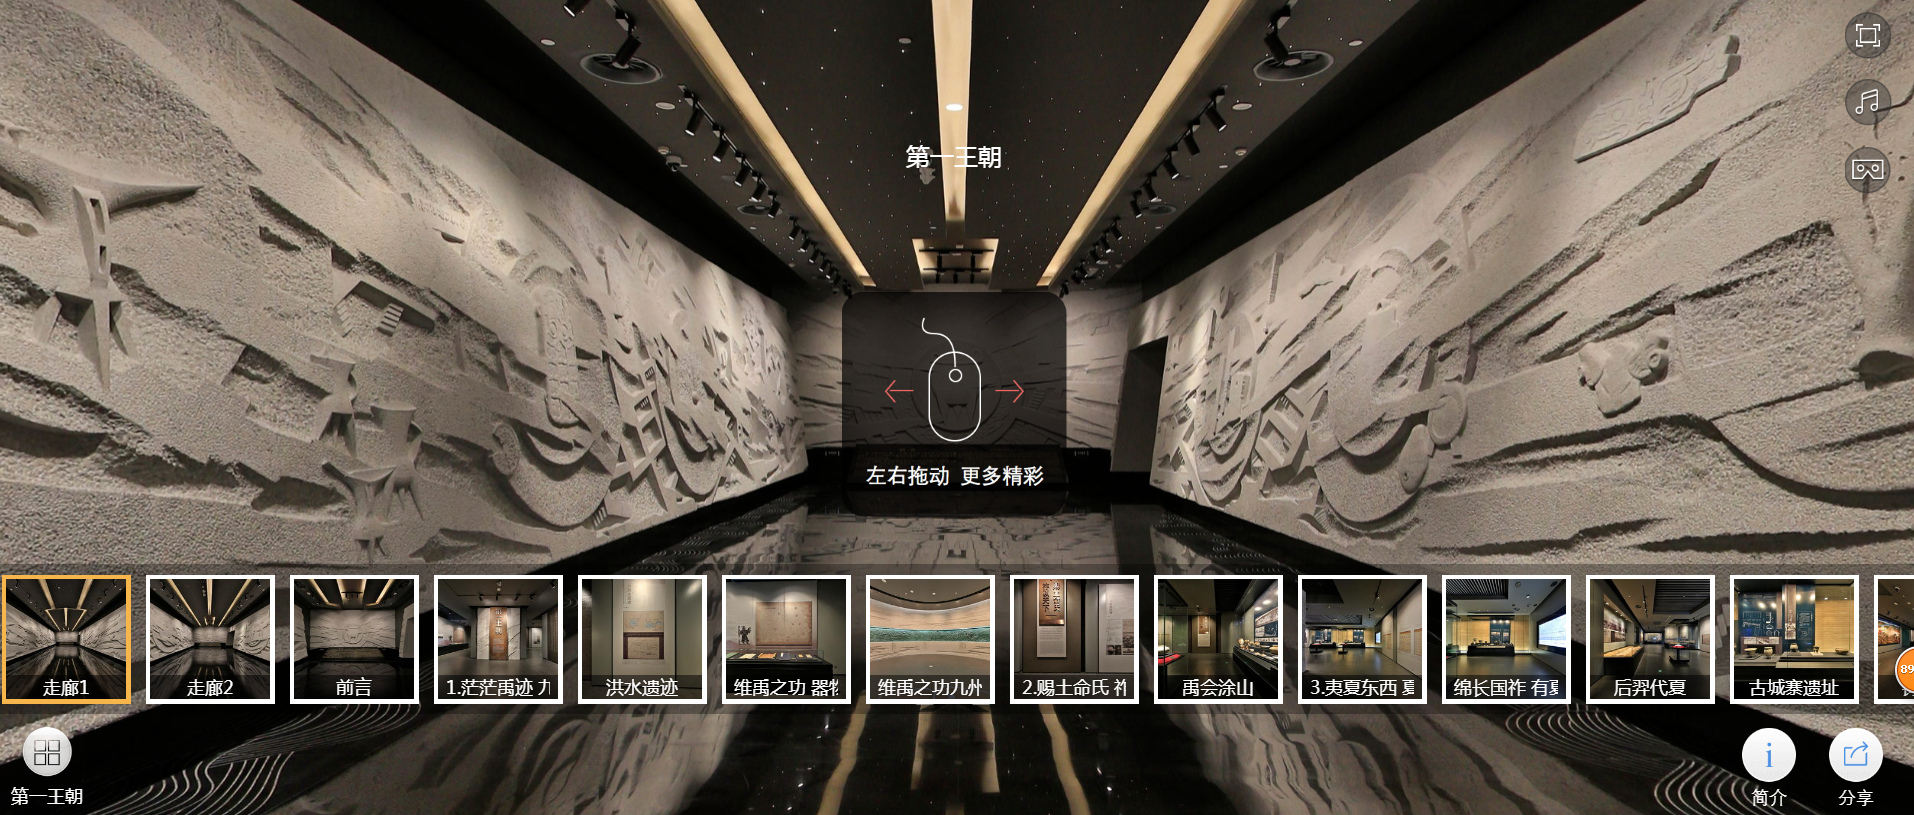 足不出户就能一览3000年前的中国 二里头夏都遗址博物馆网上展厅上线